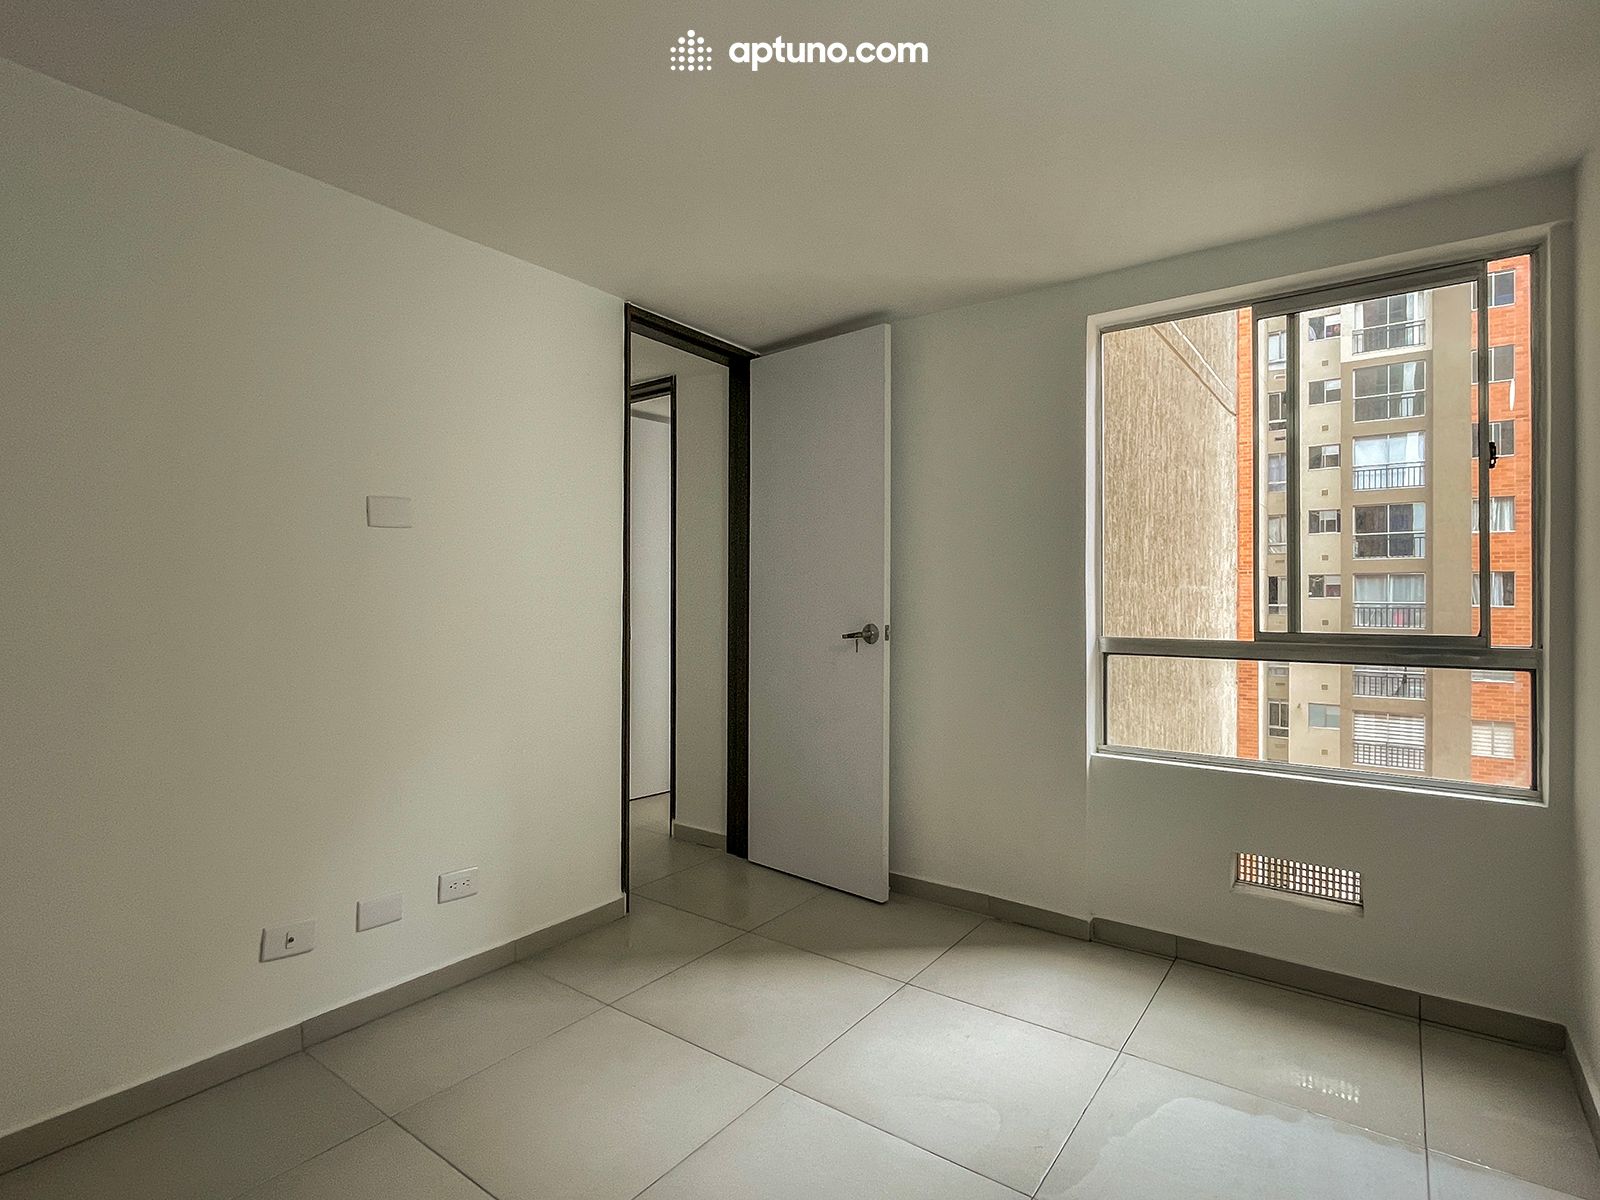 Apartamento en arriendo Rafael Escamilla 40 m² - $ 1.200.000